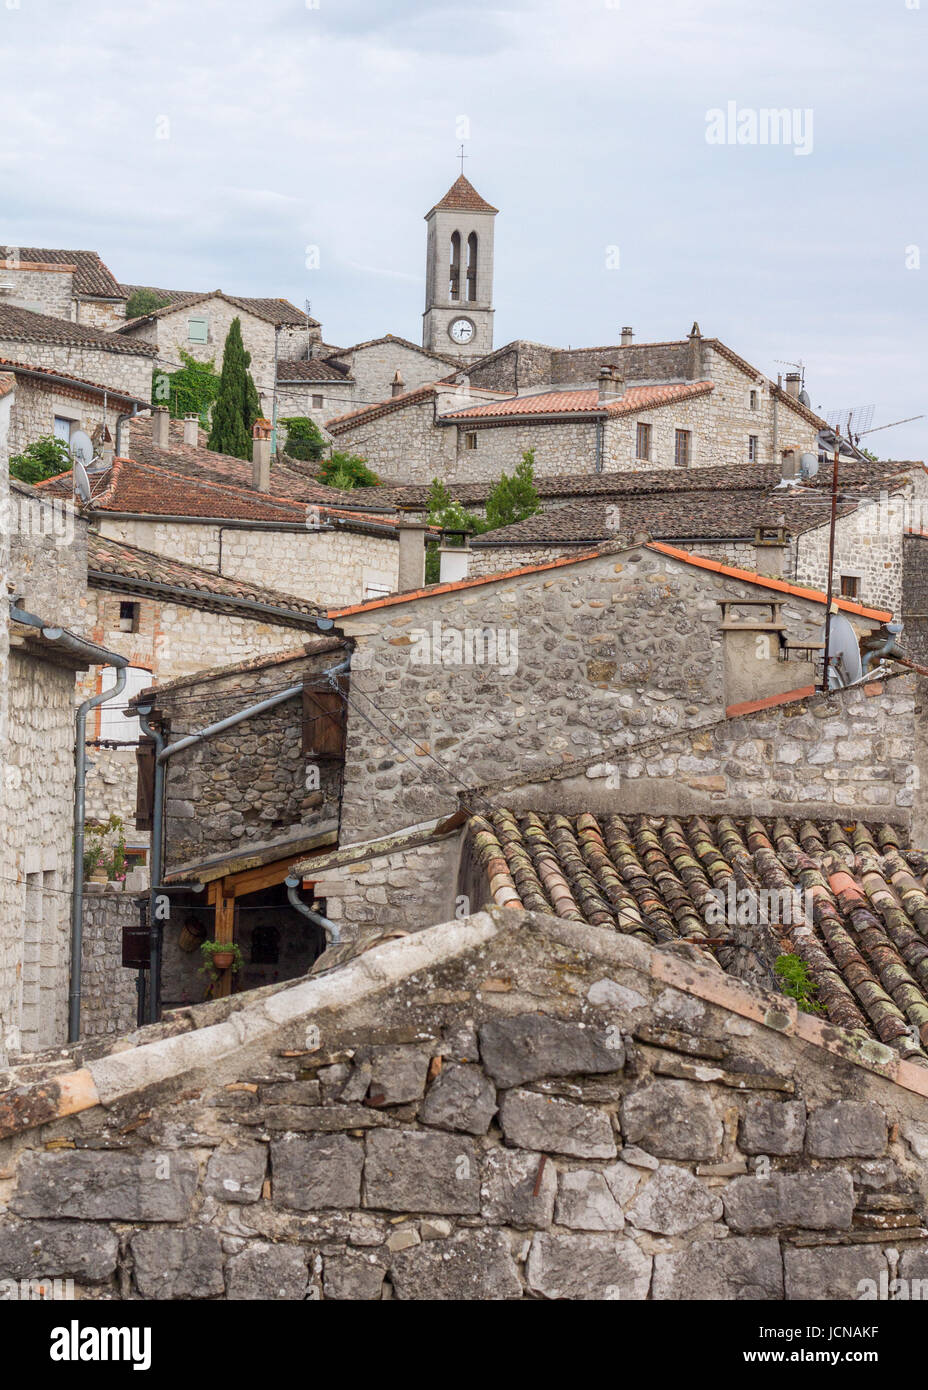 Medieval stone town. Il sud della Francia. Foto Stock